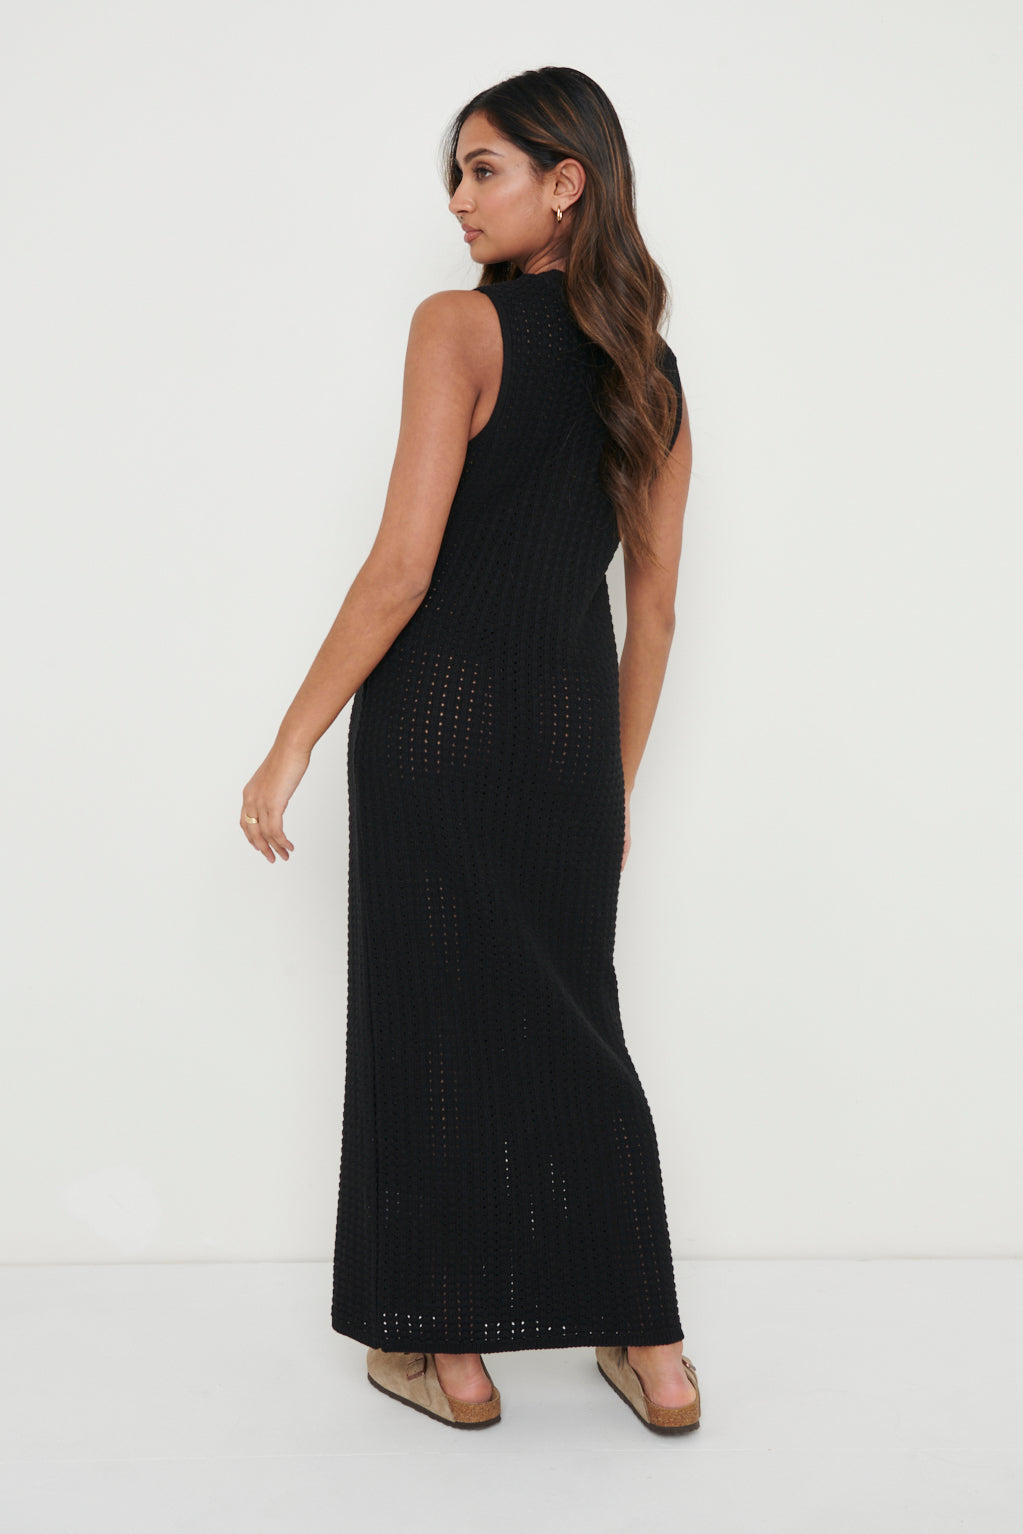 Celine Crochet Dress - Black